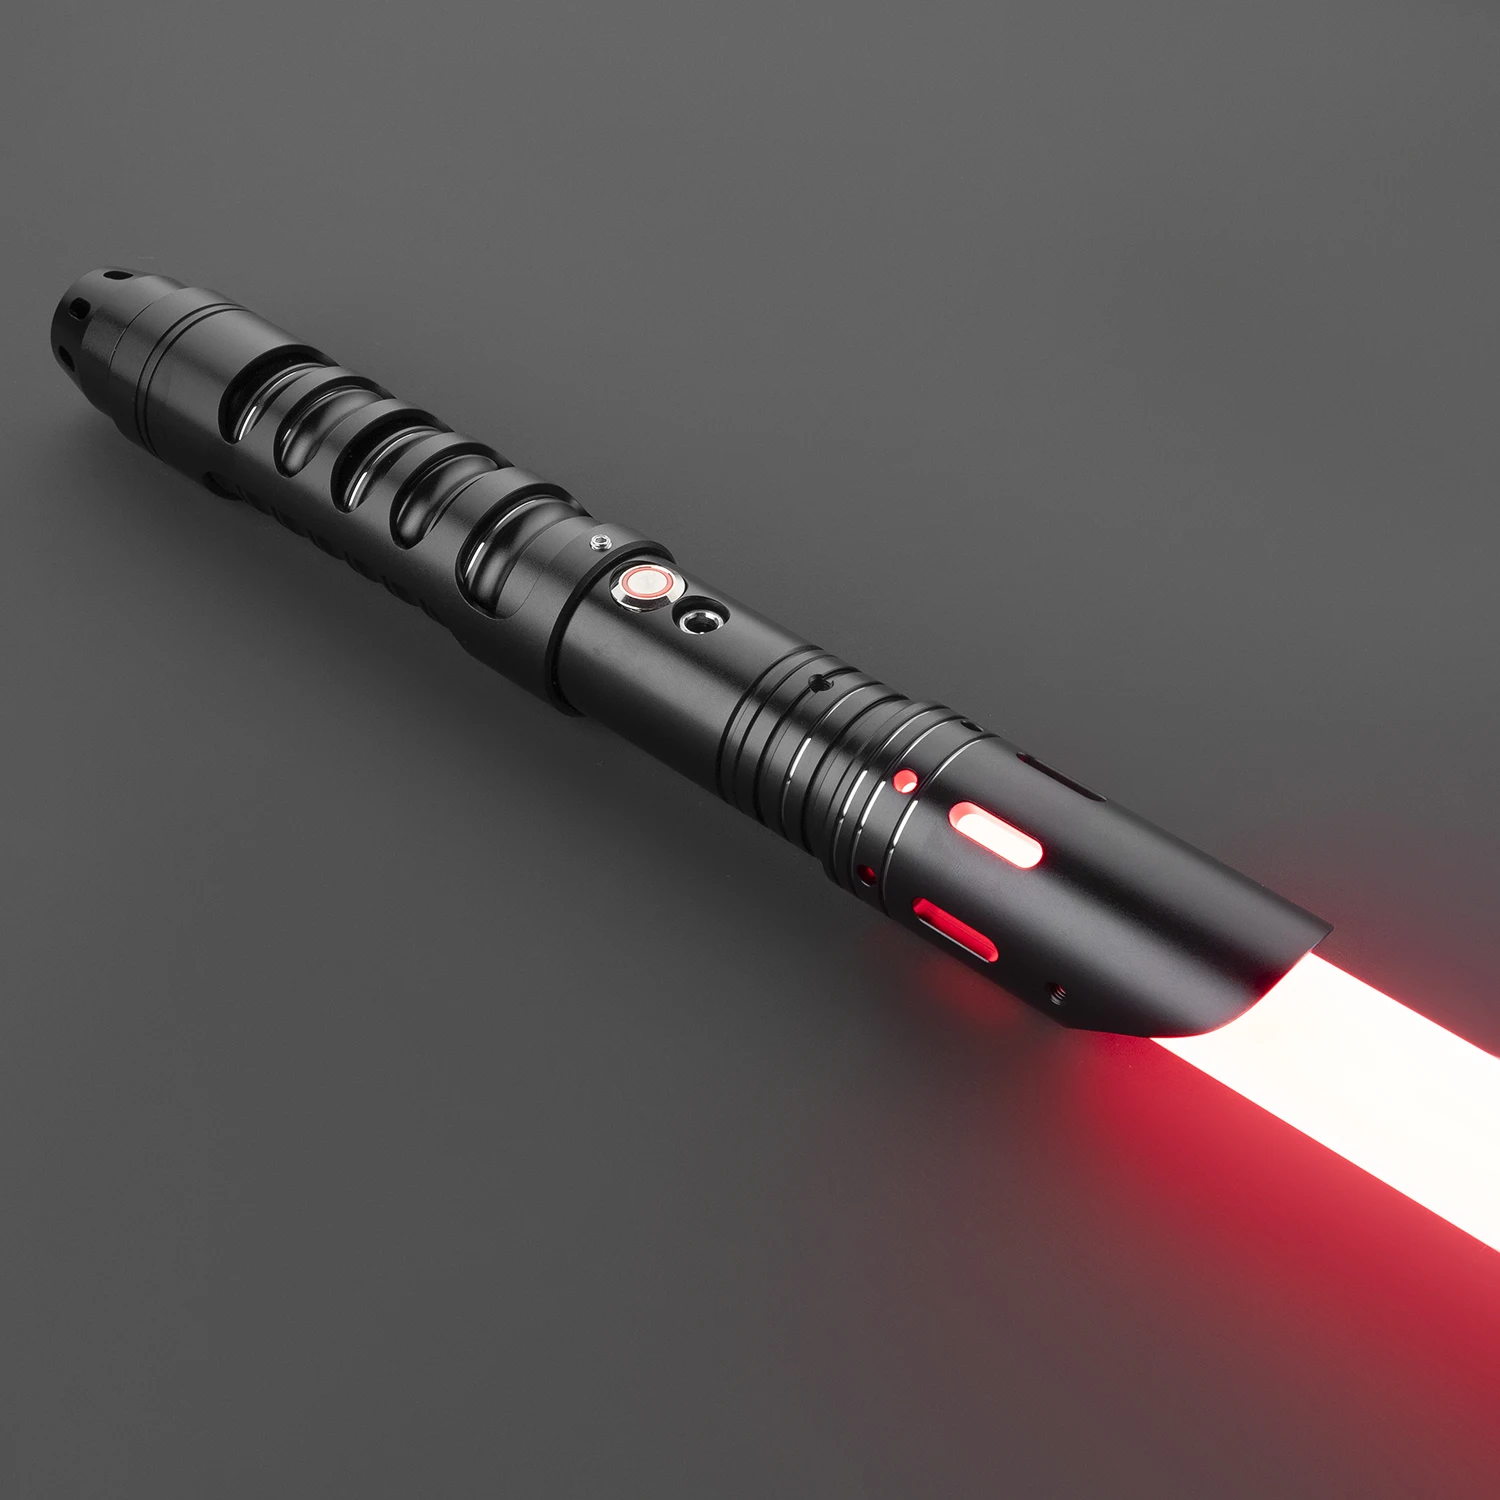 

Lightsaber Neopixel Jedi Laser Sword Metal Hilt Heavy Dueling Sensitive Smooth Infinite Changing Hitting Sound LTG Light Saber